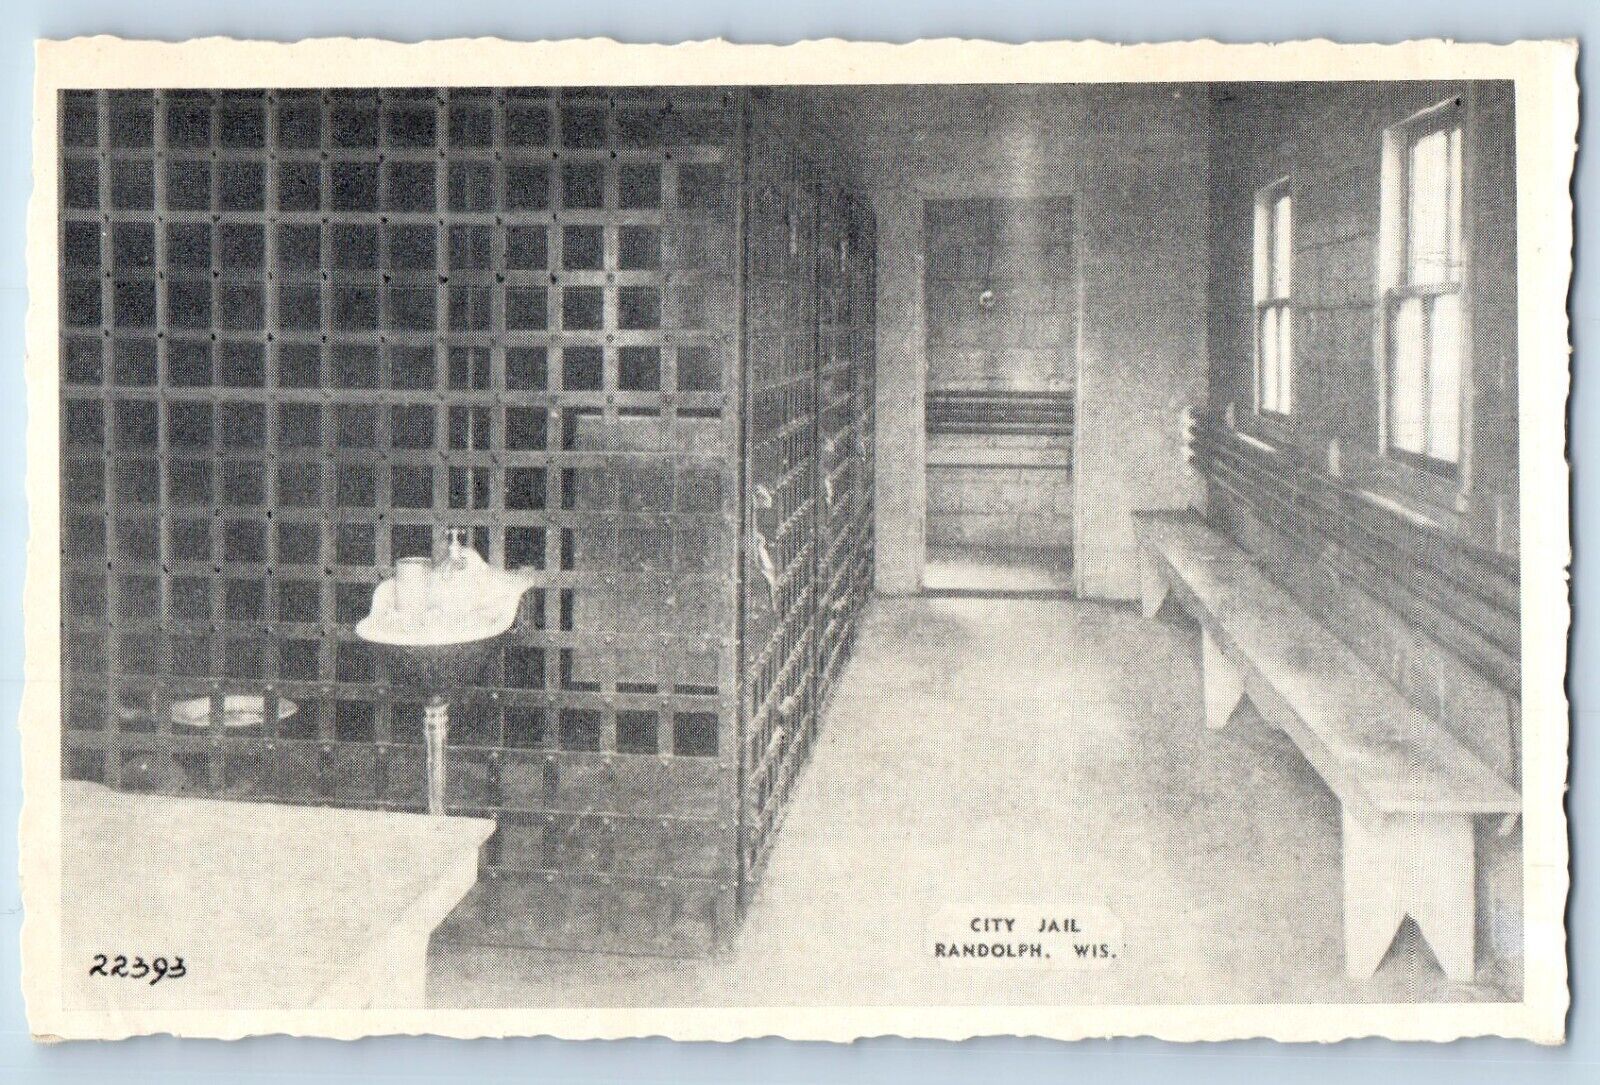 Randolph Wisconsin WI Postcard City Jail Interior Building c1940 Vintage Antique